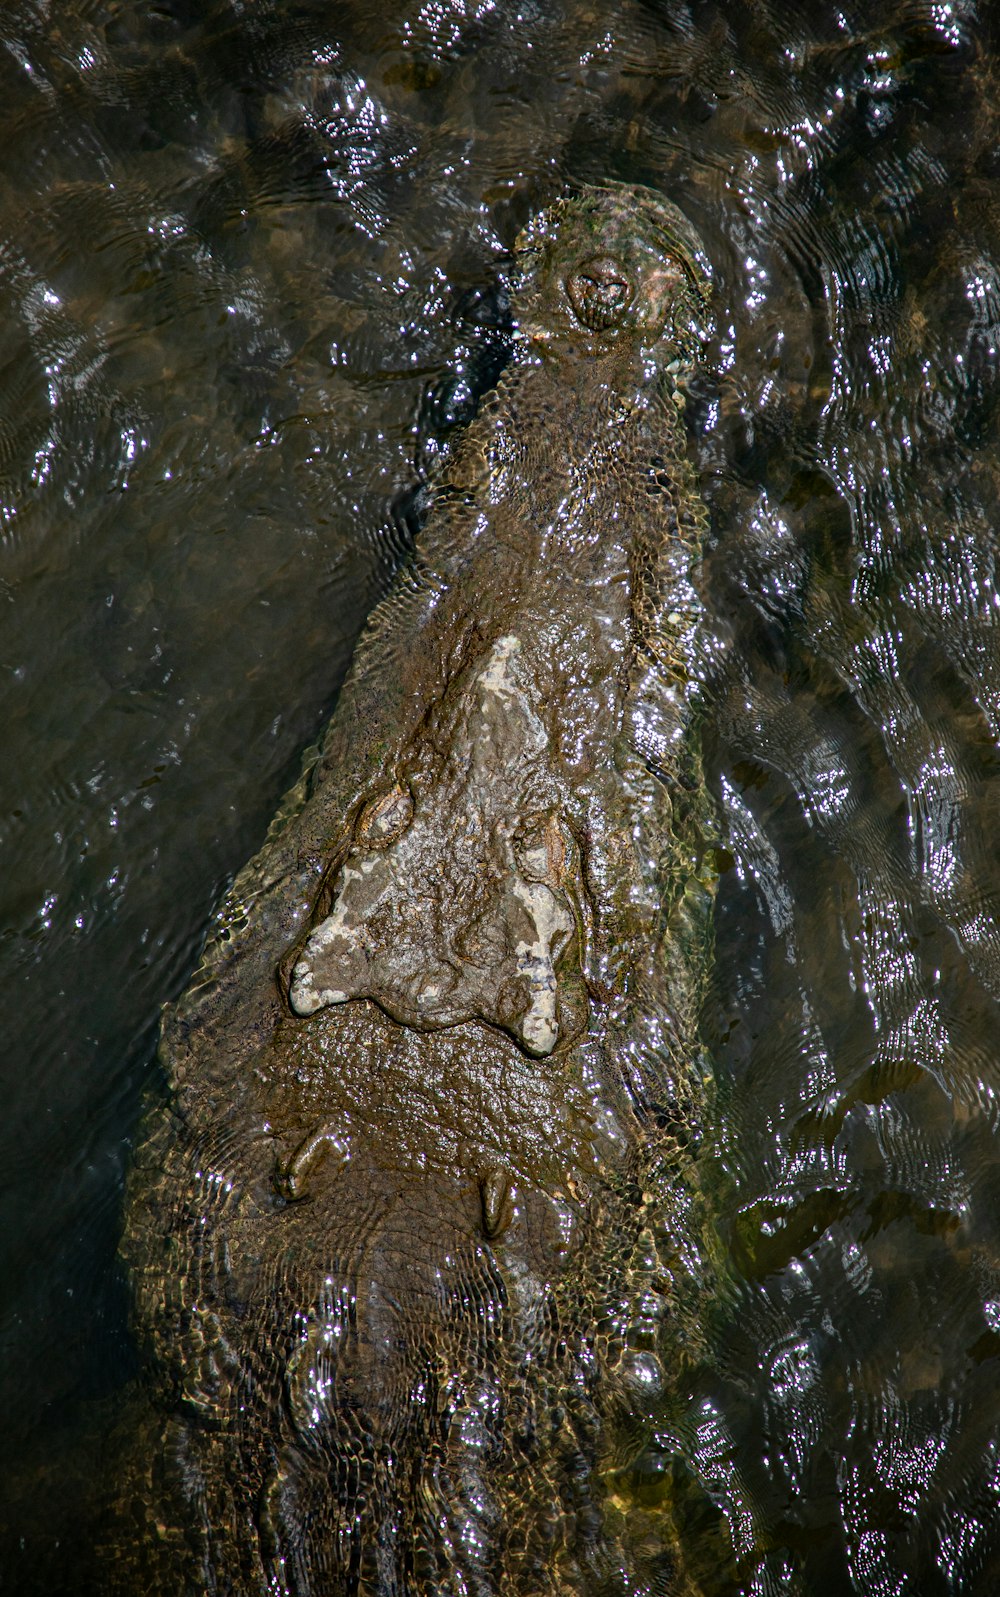 Un grande alligatore è immerso nell'acqua